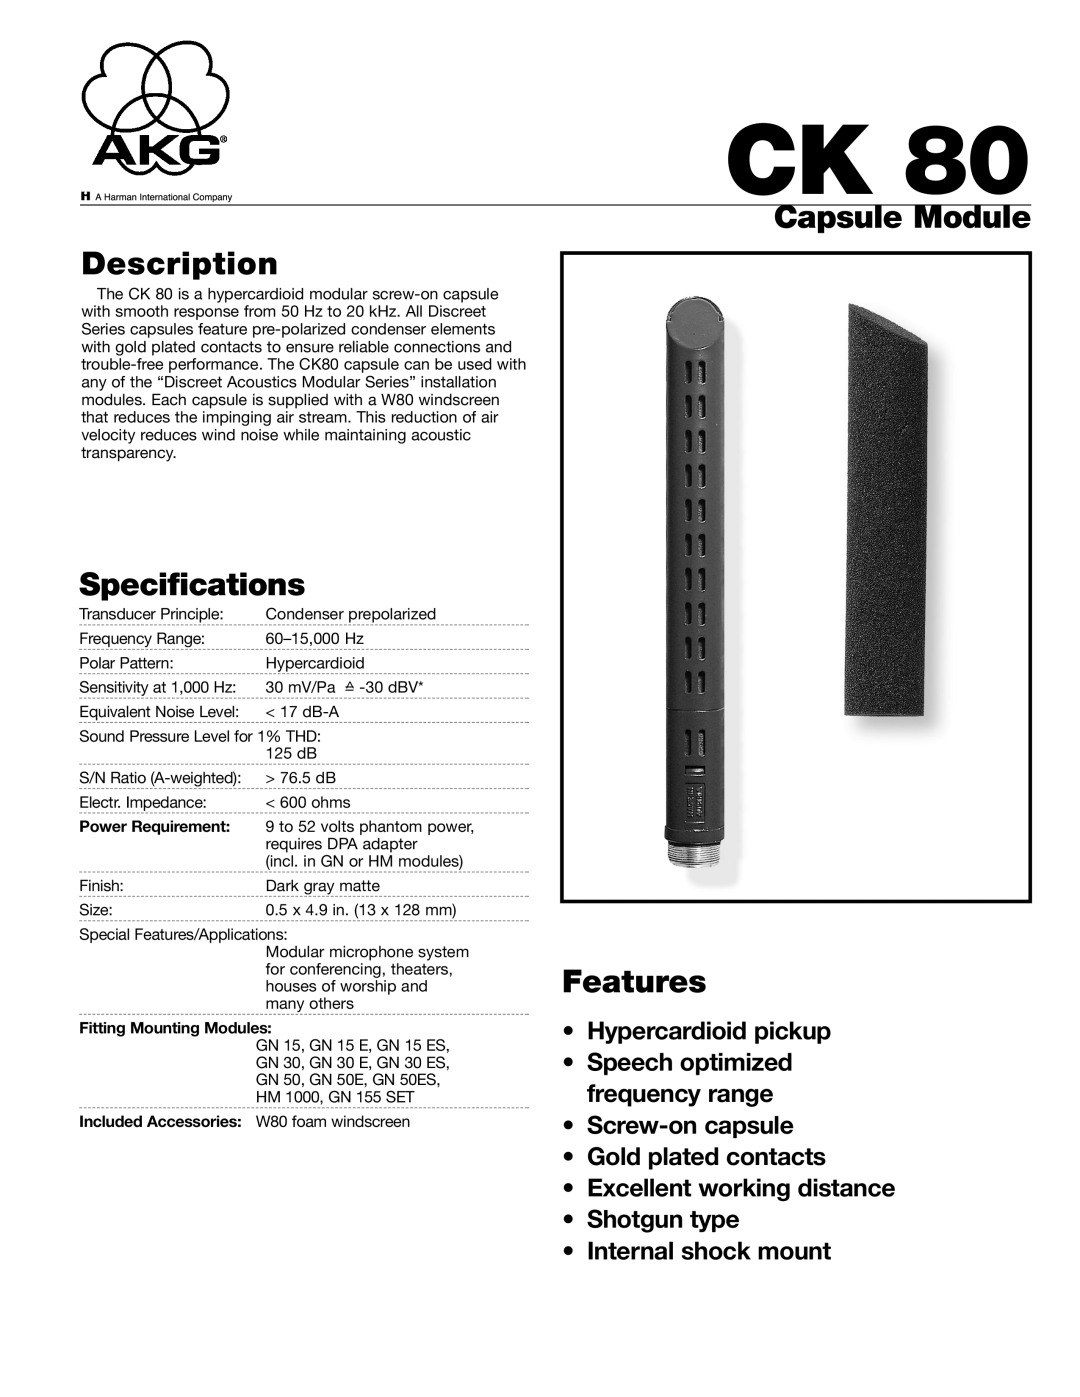 AKG Acoustics CK80 specifications Capsule Module Description, Specifications, Features, Power Requirement 